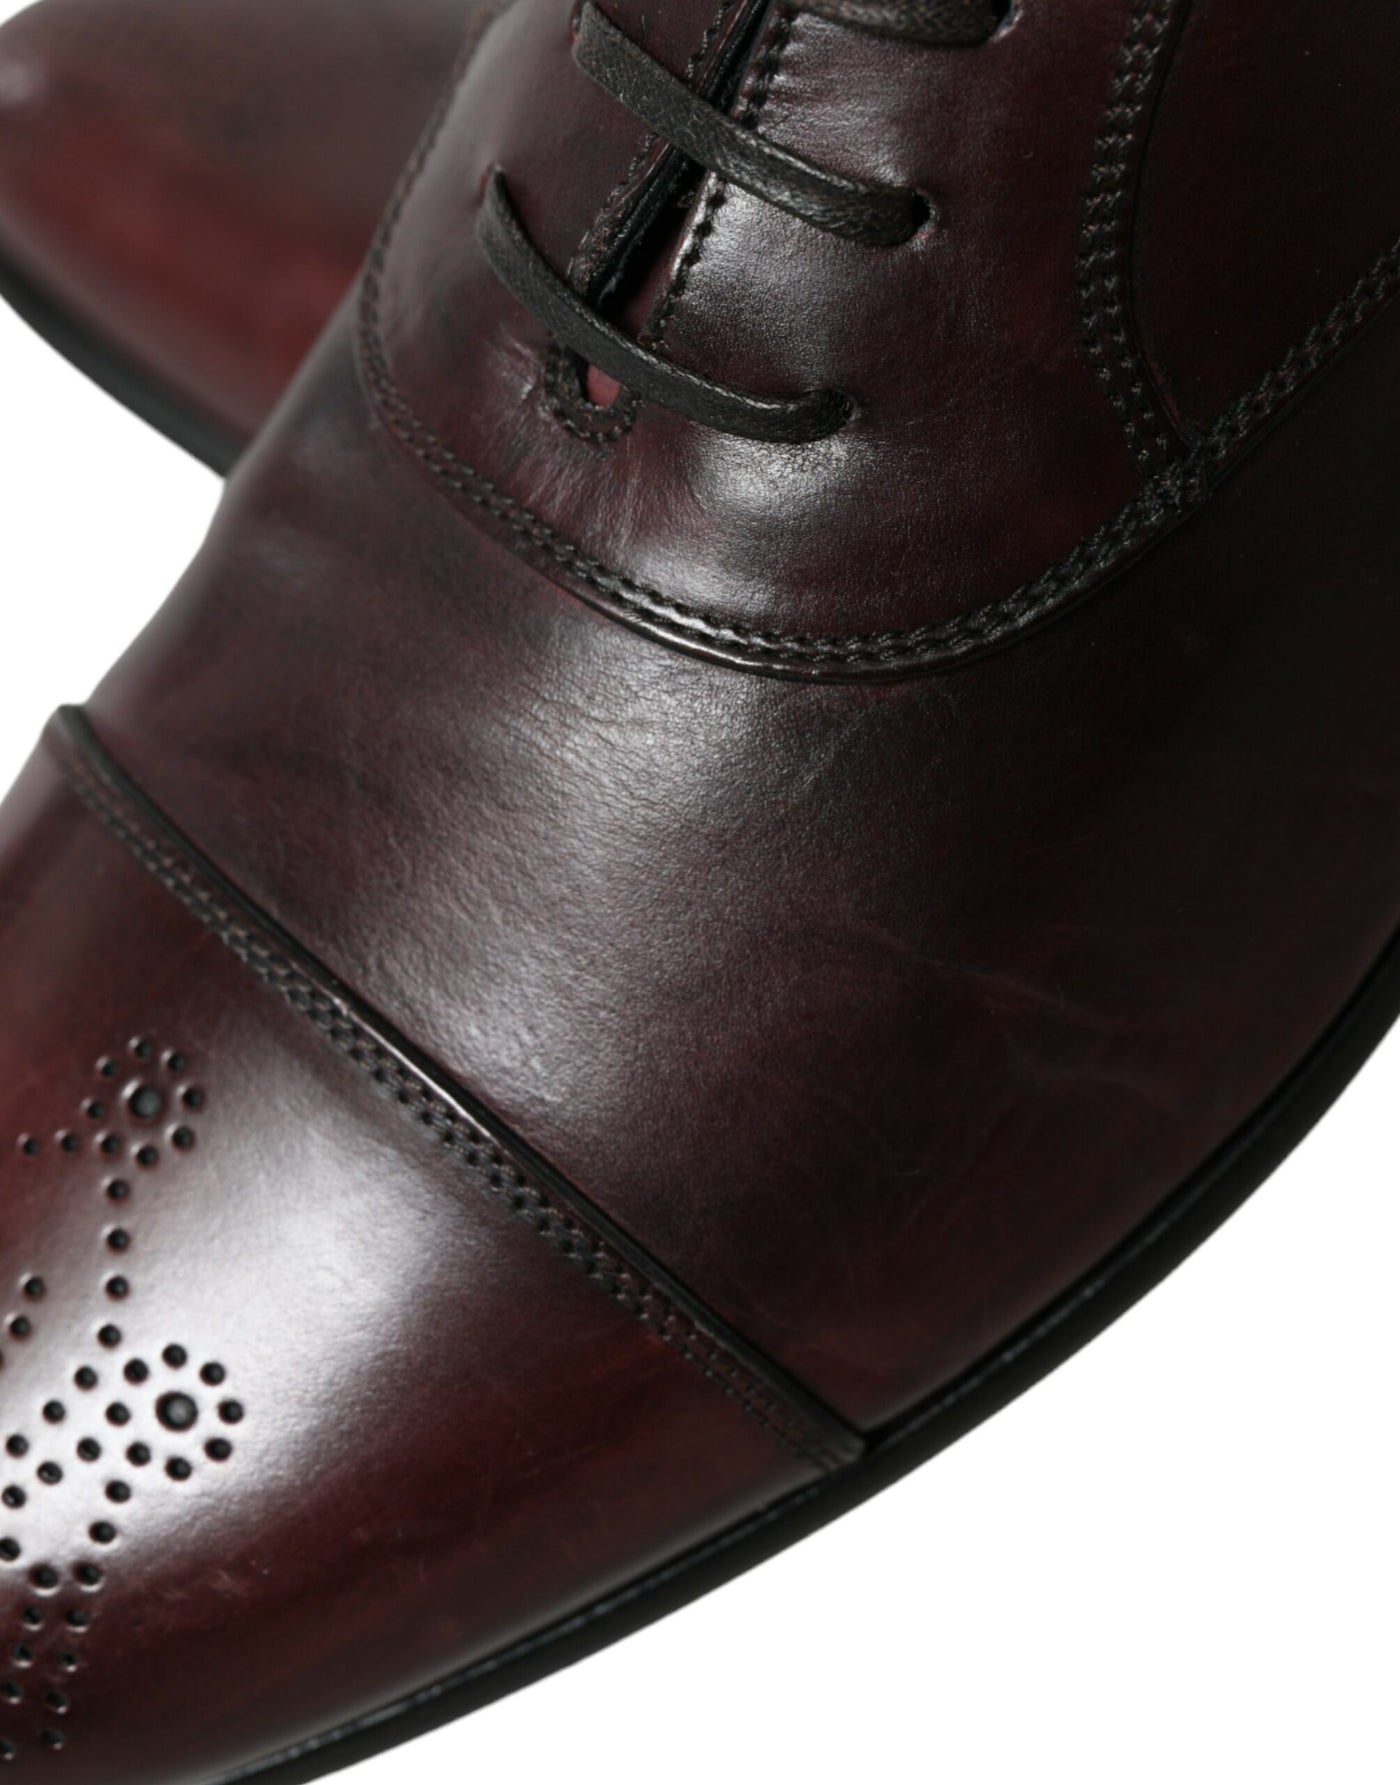 Dolce & Gabbana Bordeaux Leather Men Formal Derby Dress Shoes